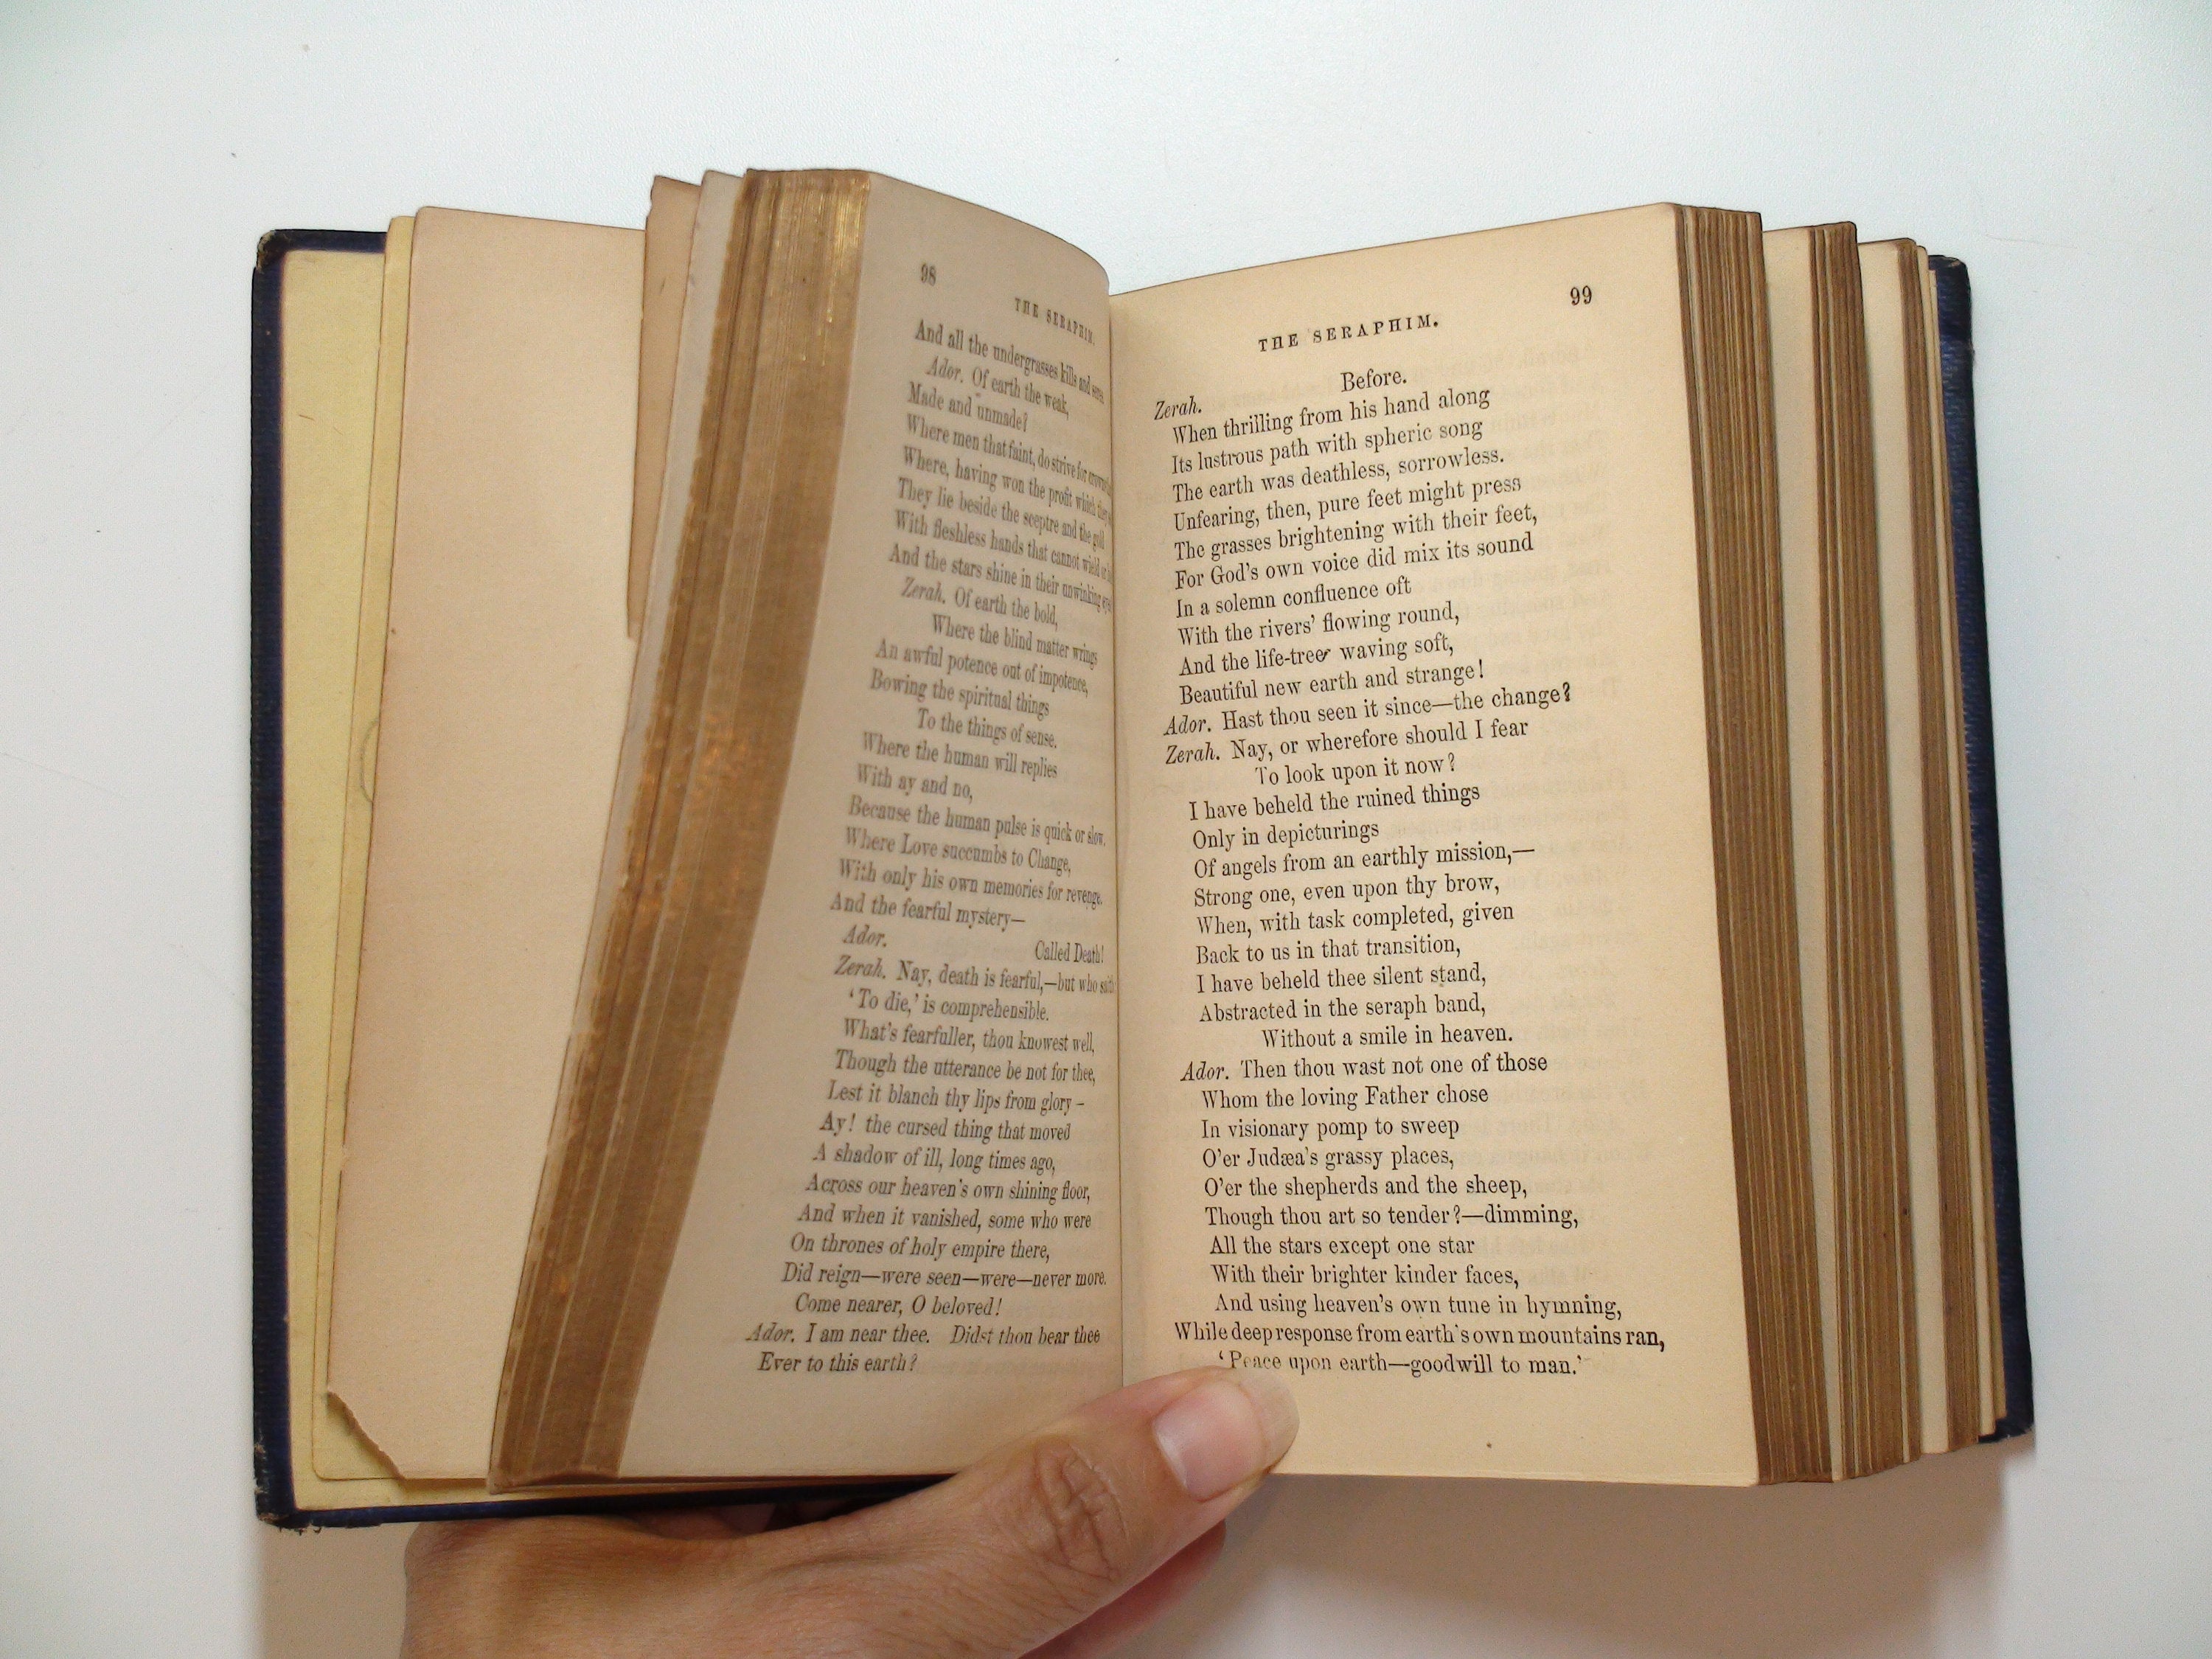 Poems by Elizabeth Barrett Browning, Vol I, James Miller, 1864